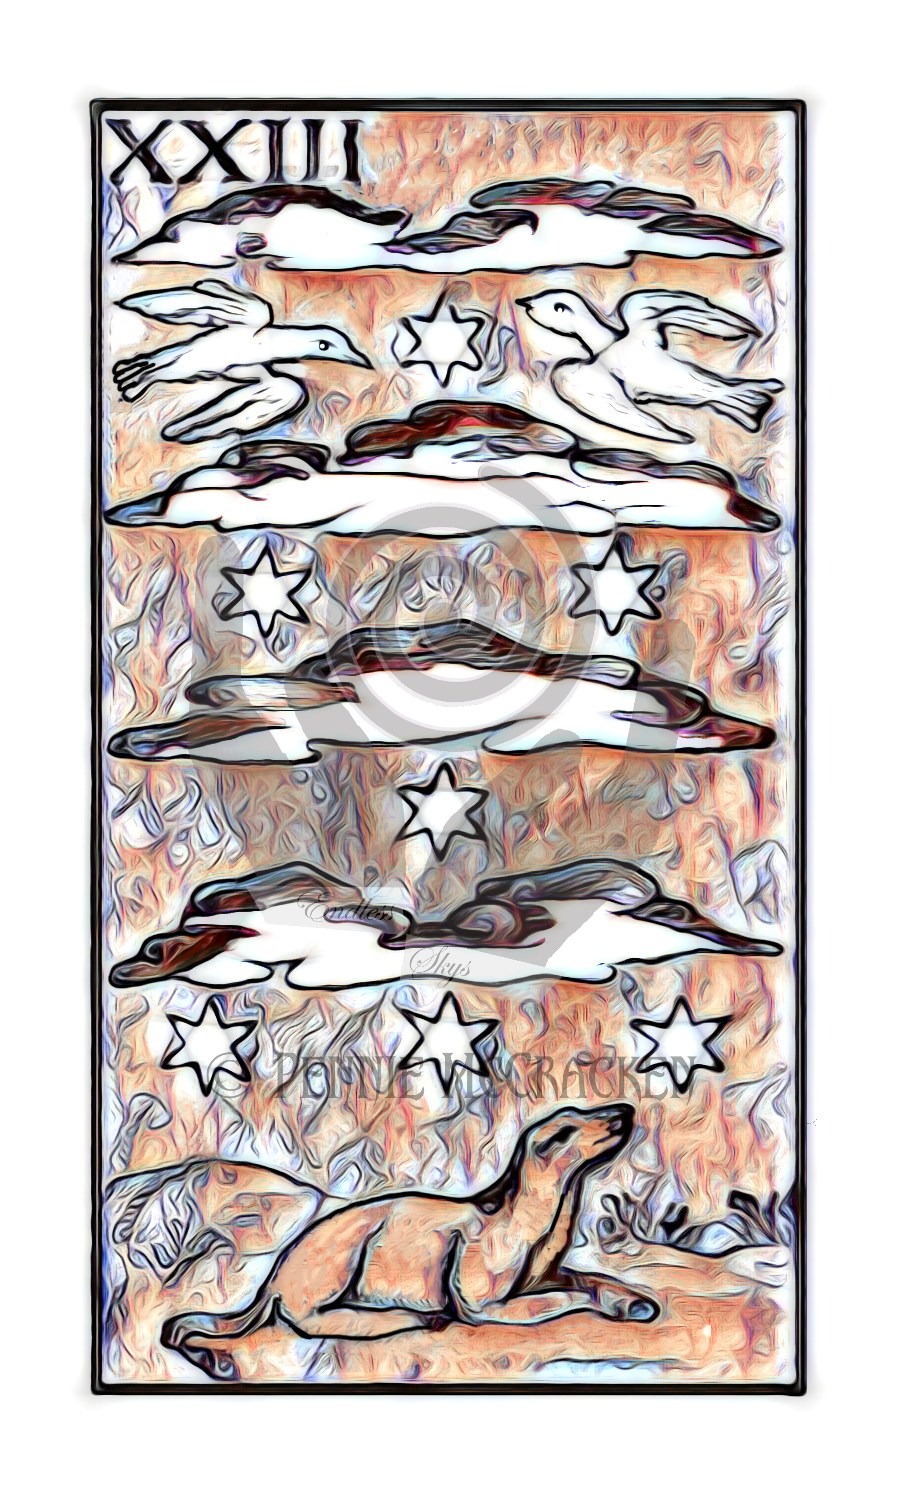 Minchiate Fiorentine Tarot Deck in Broze Style by Pennie McCracken - Endless Skys